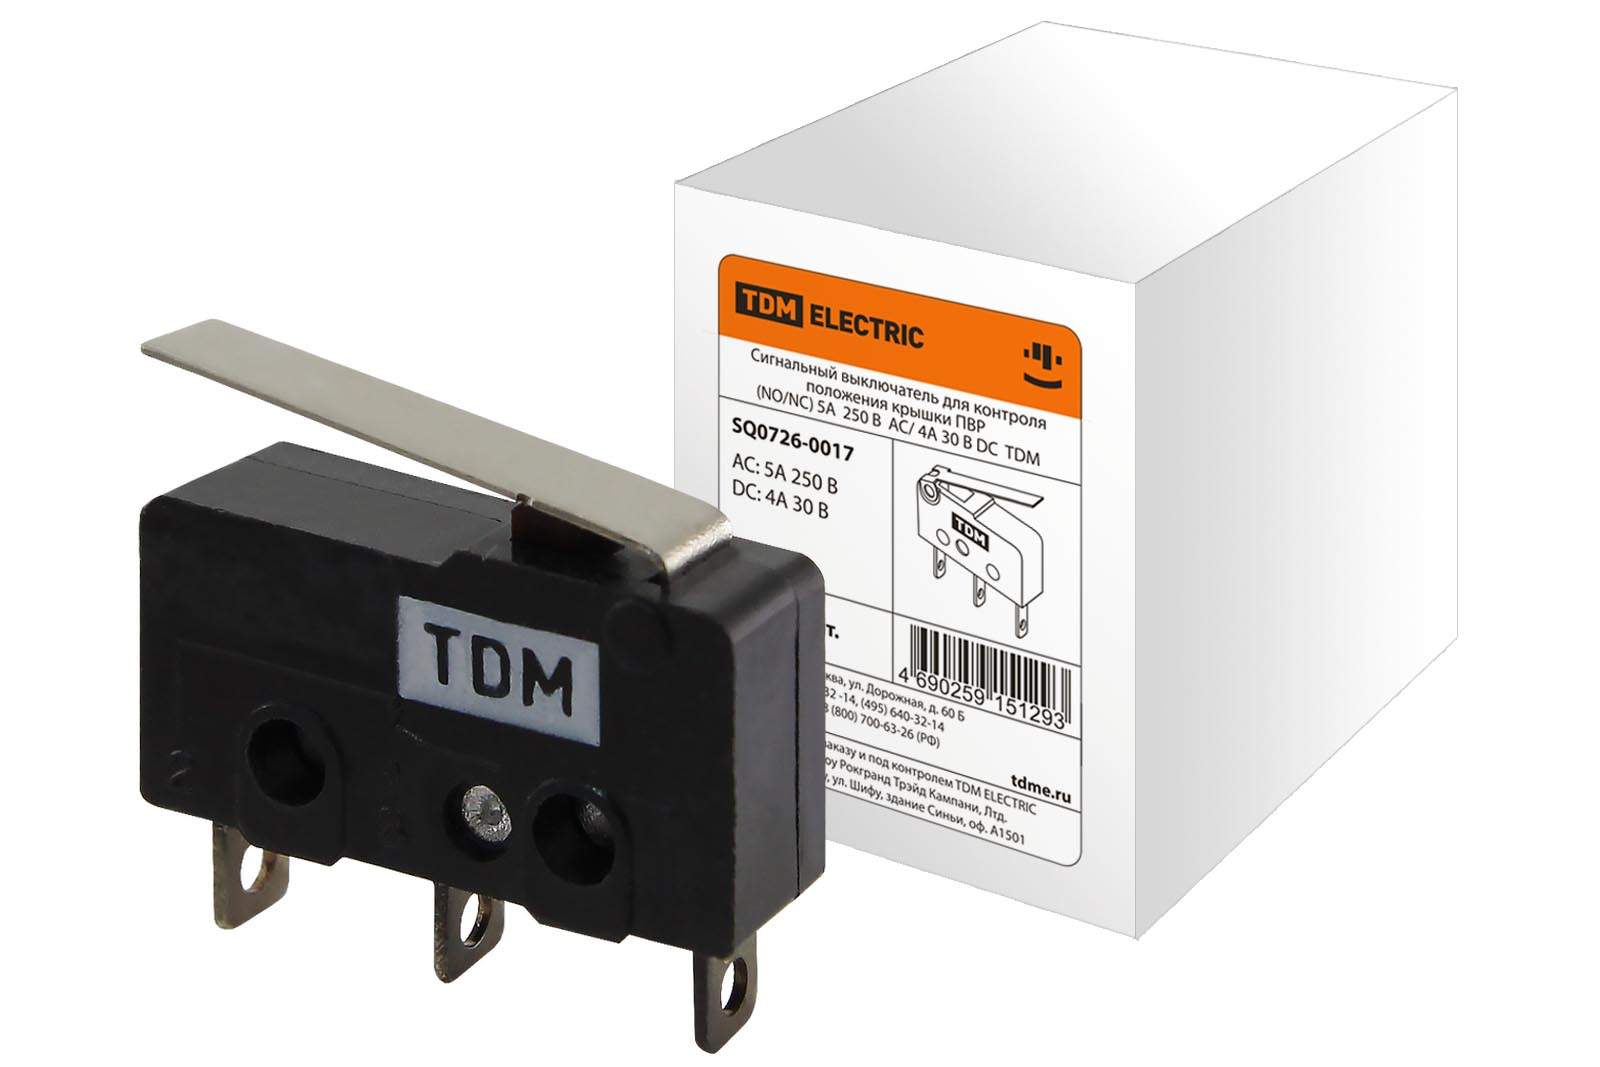 сигнальный выключатель для контроля положения крышки пвр  (no/nc) 5a  250в  ac/ 4a 30в dc  tdm от BTSprom.by